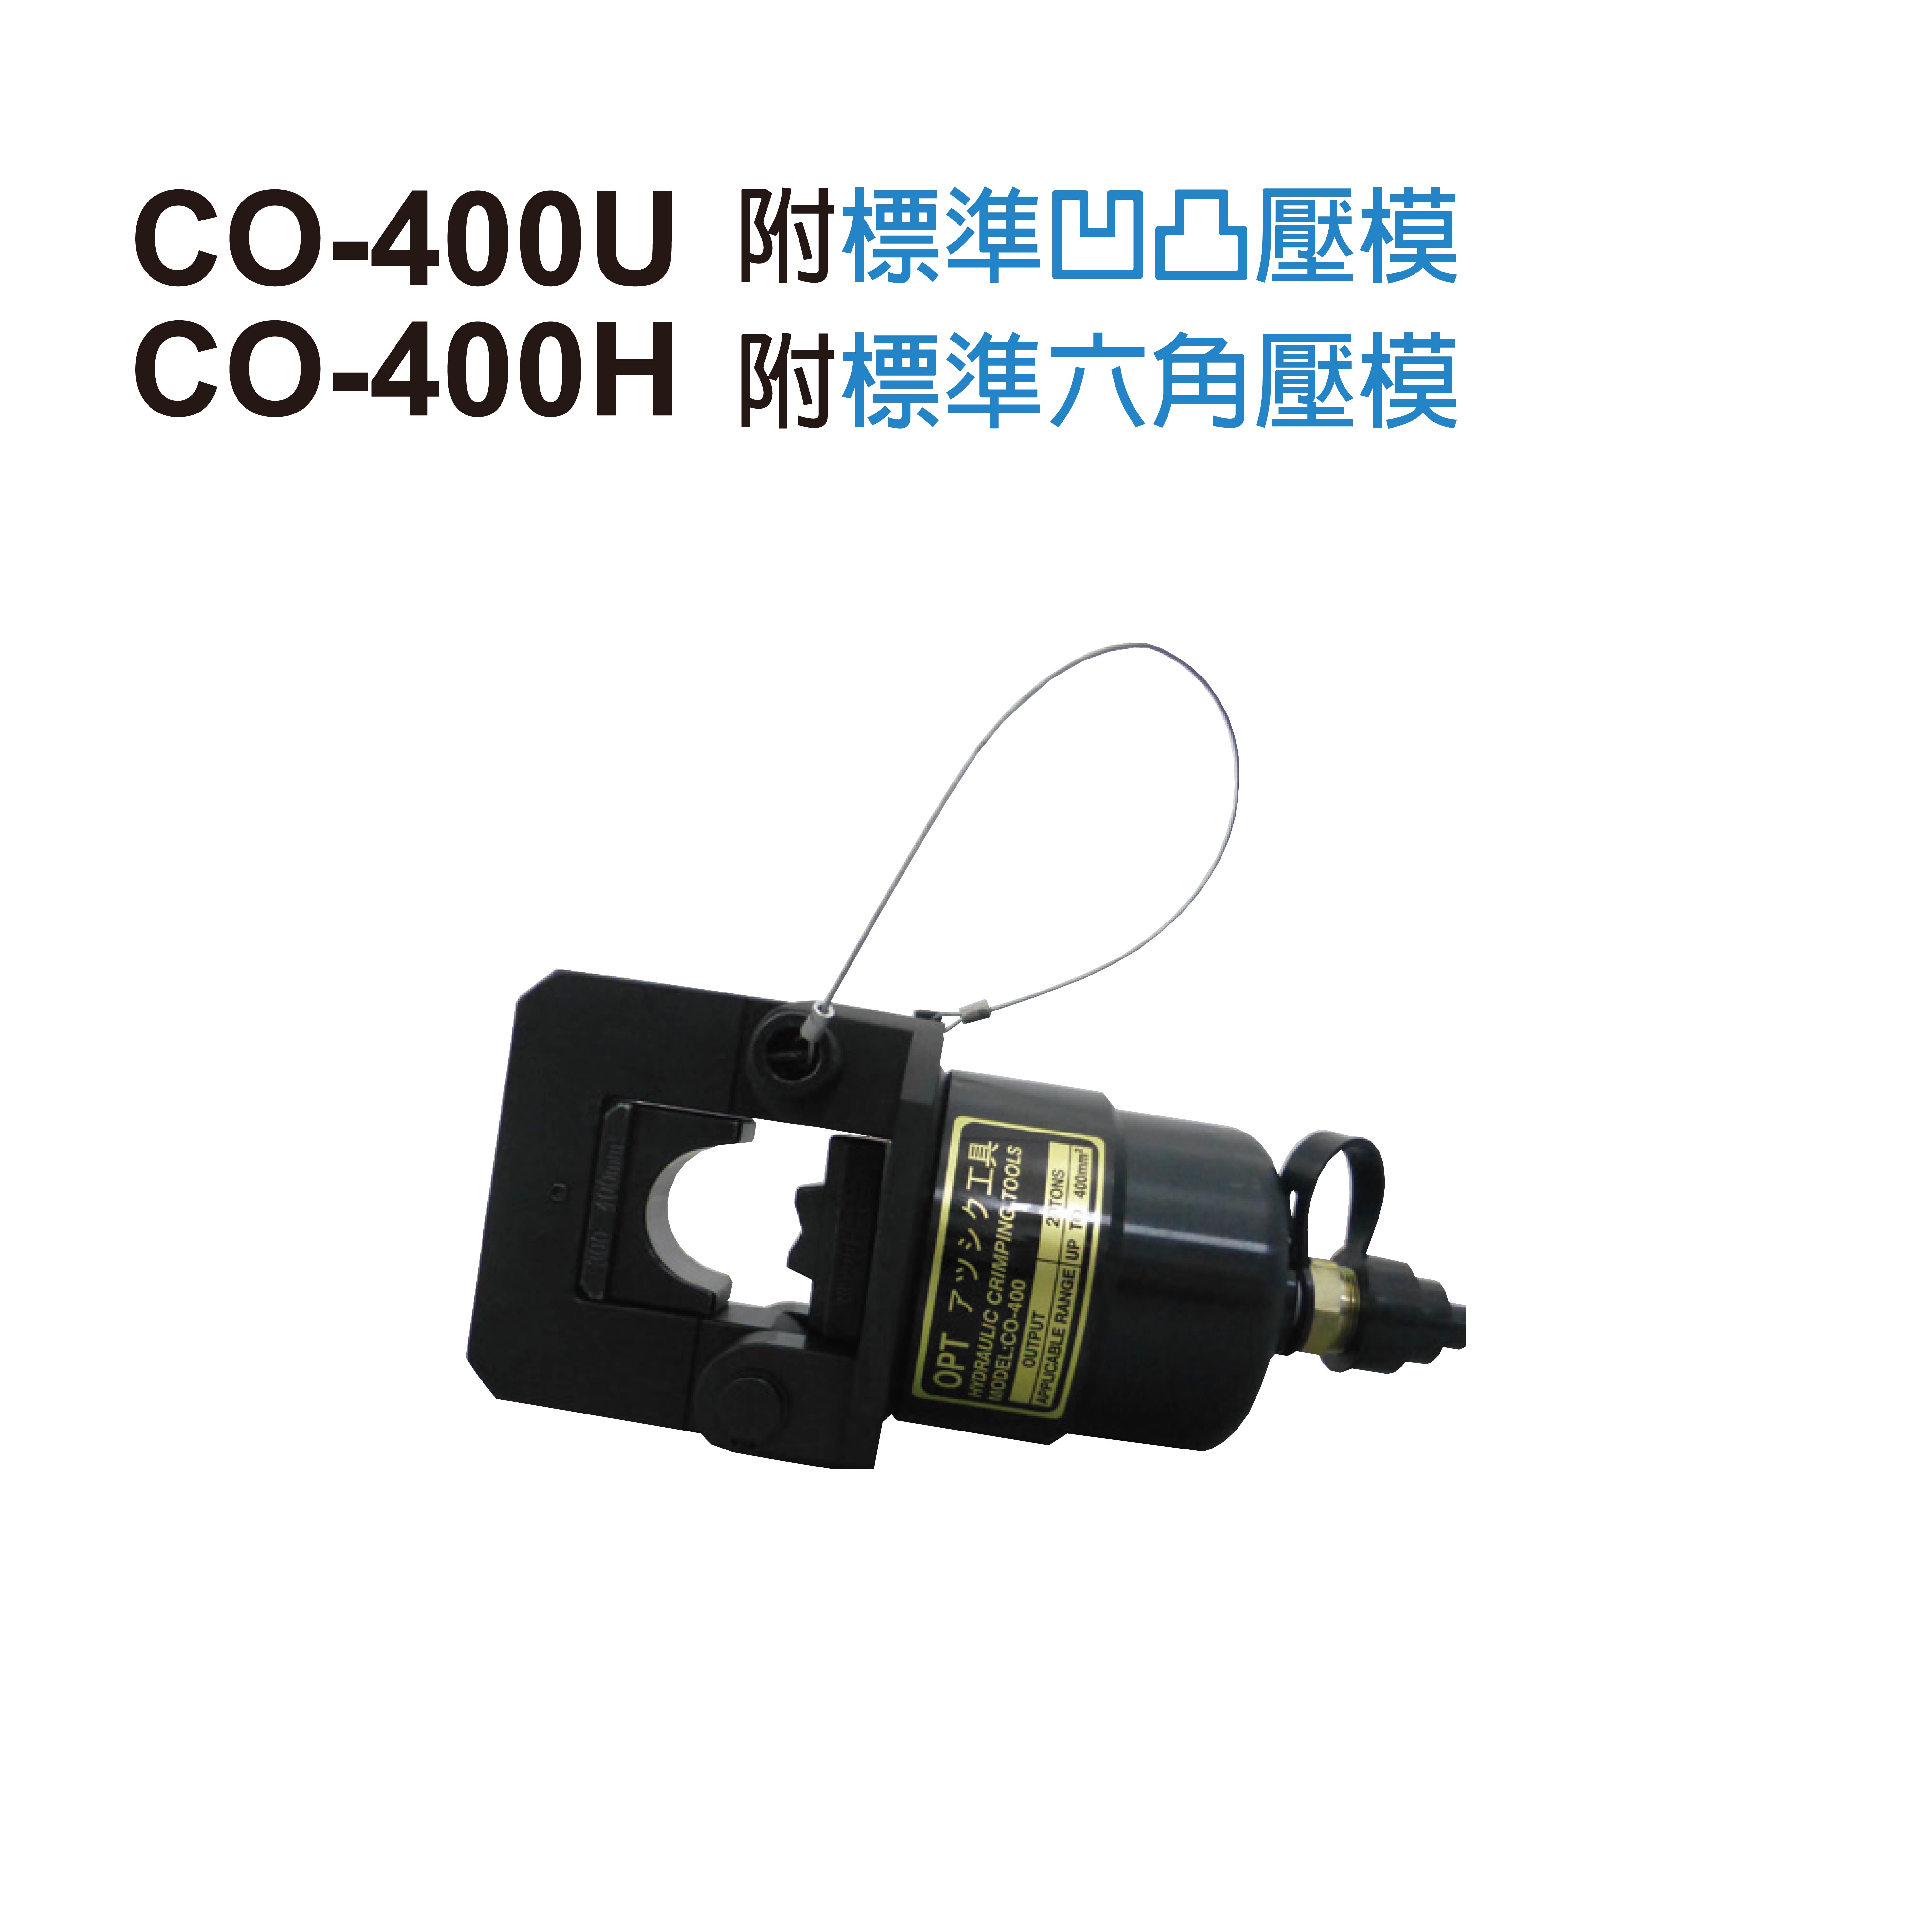 CO-400U REMOTE HYDRAULIC CRIMPING HEAD